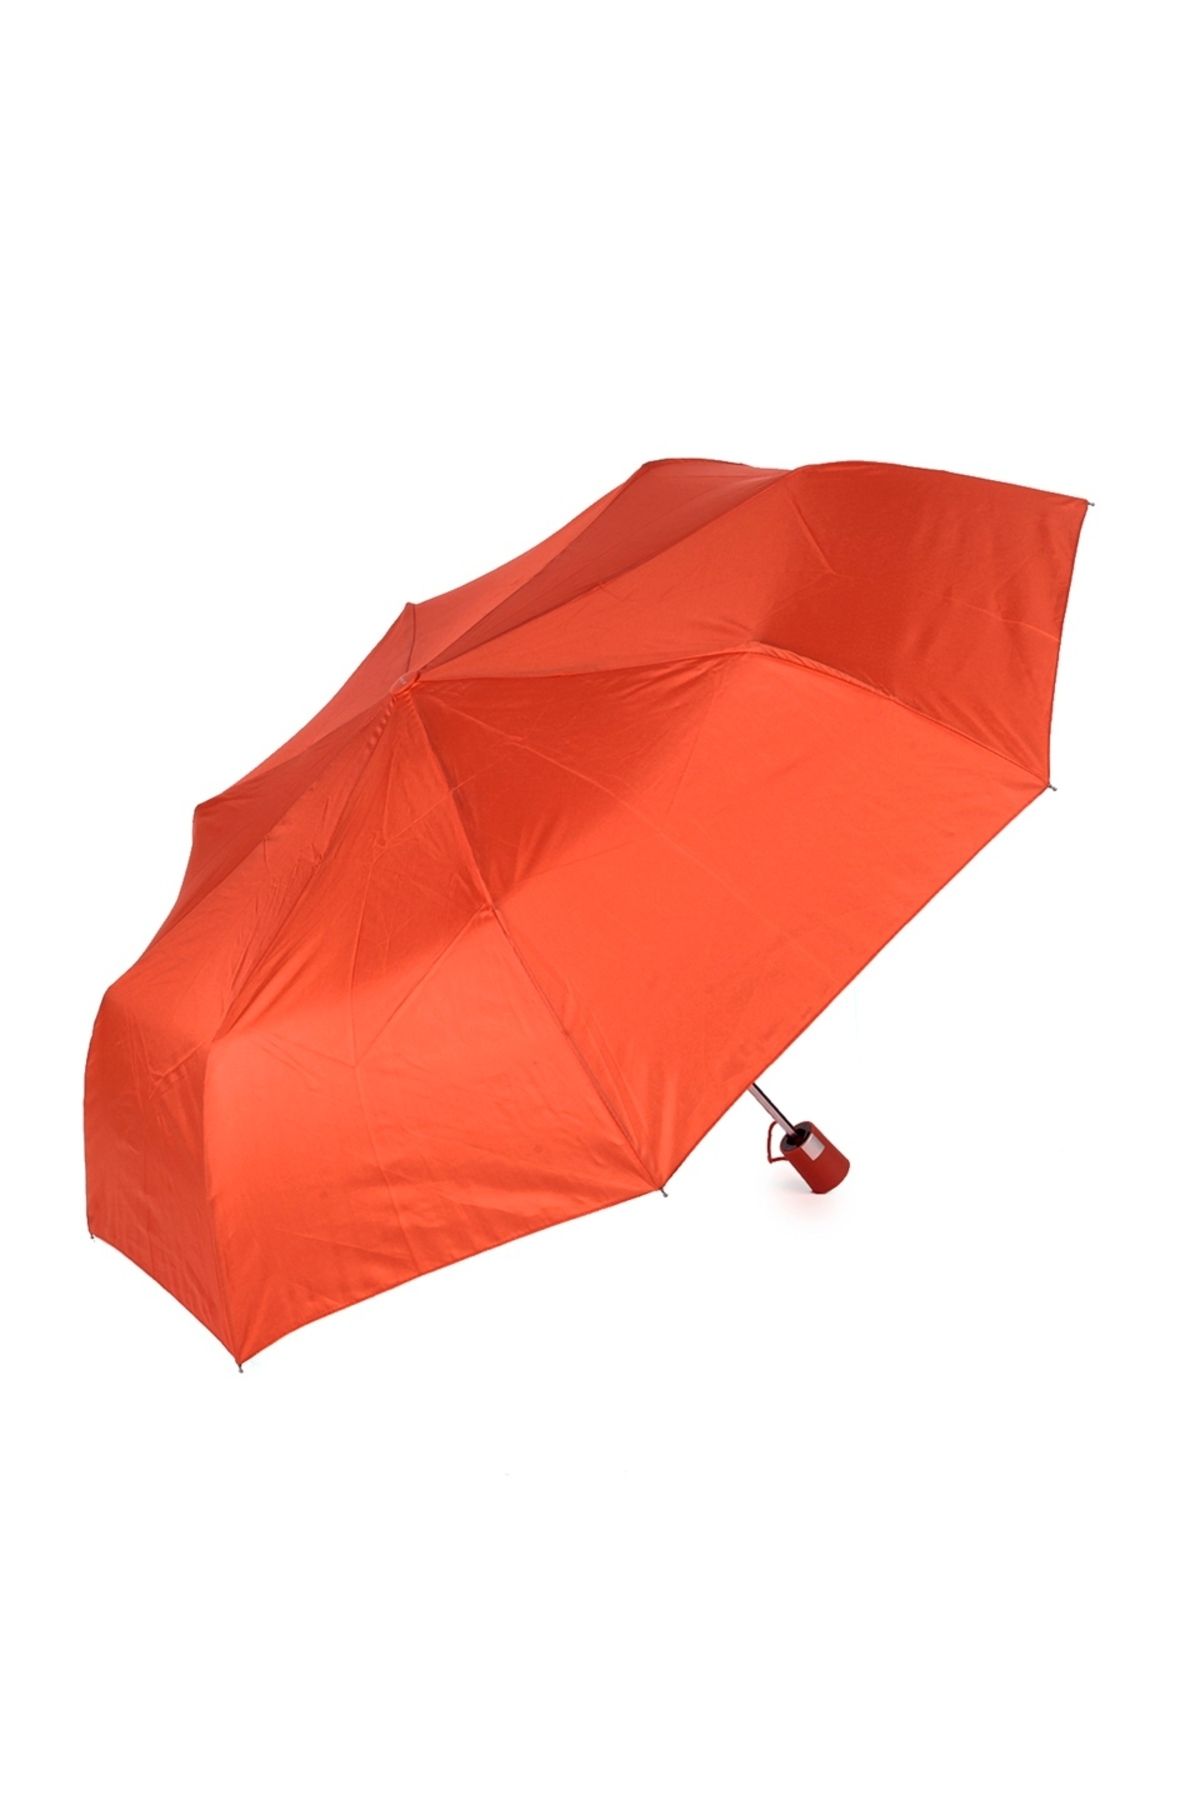 Marlux Kırmızı Otomatik Kadın Şemsiye M21mar113lr005